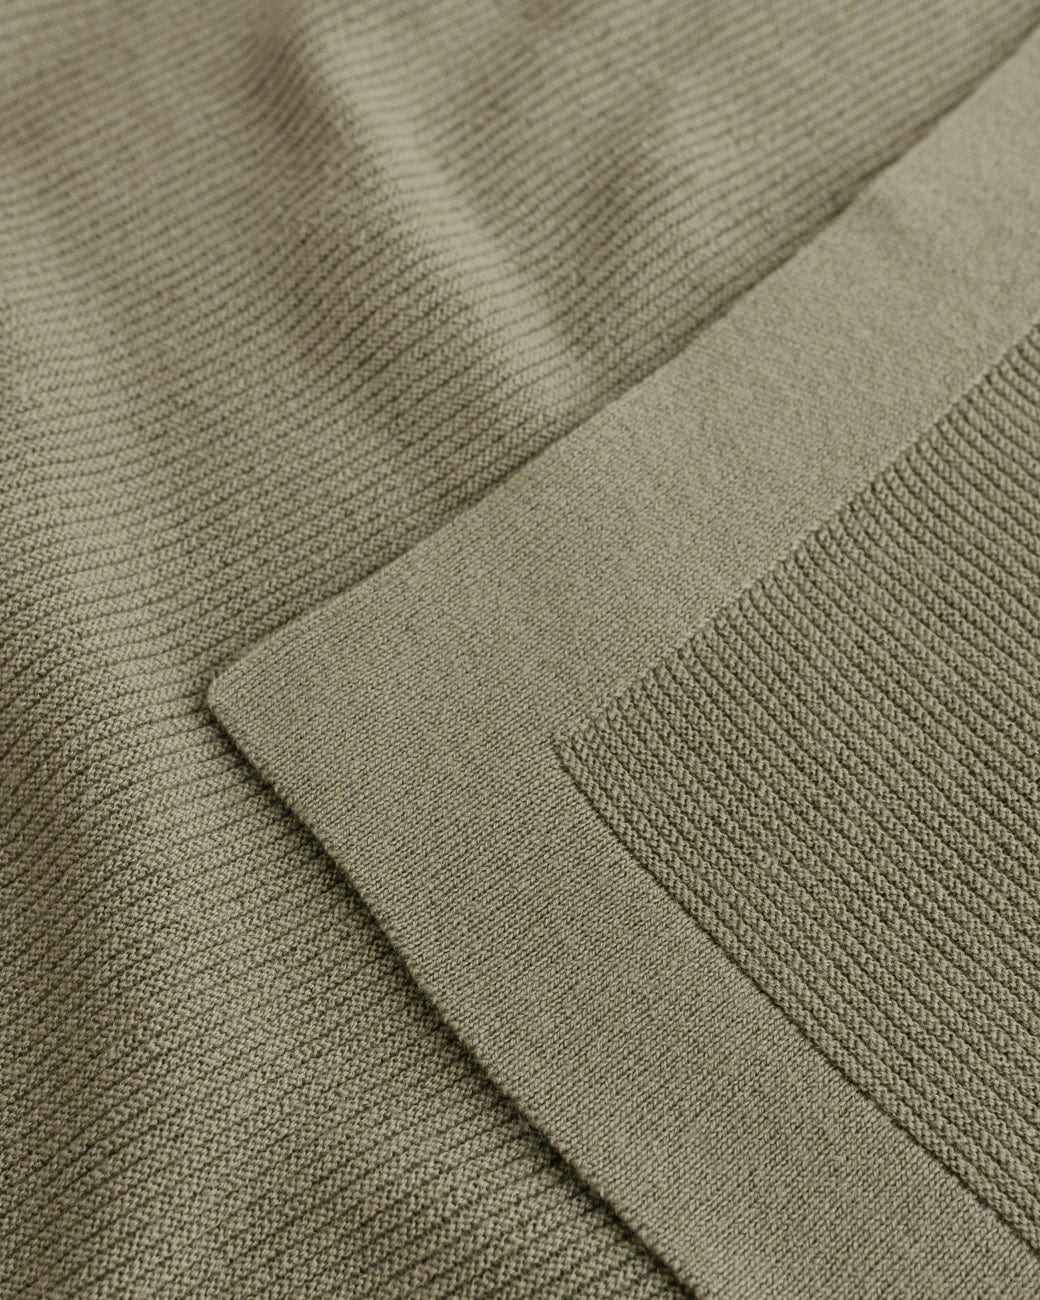 Merino wool blanket "Gust" artichoke